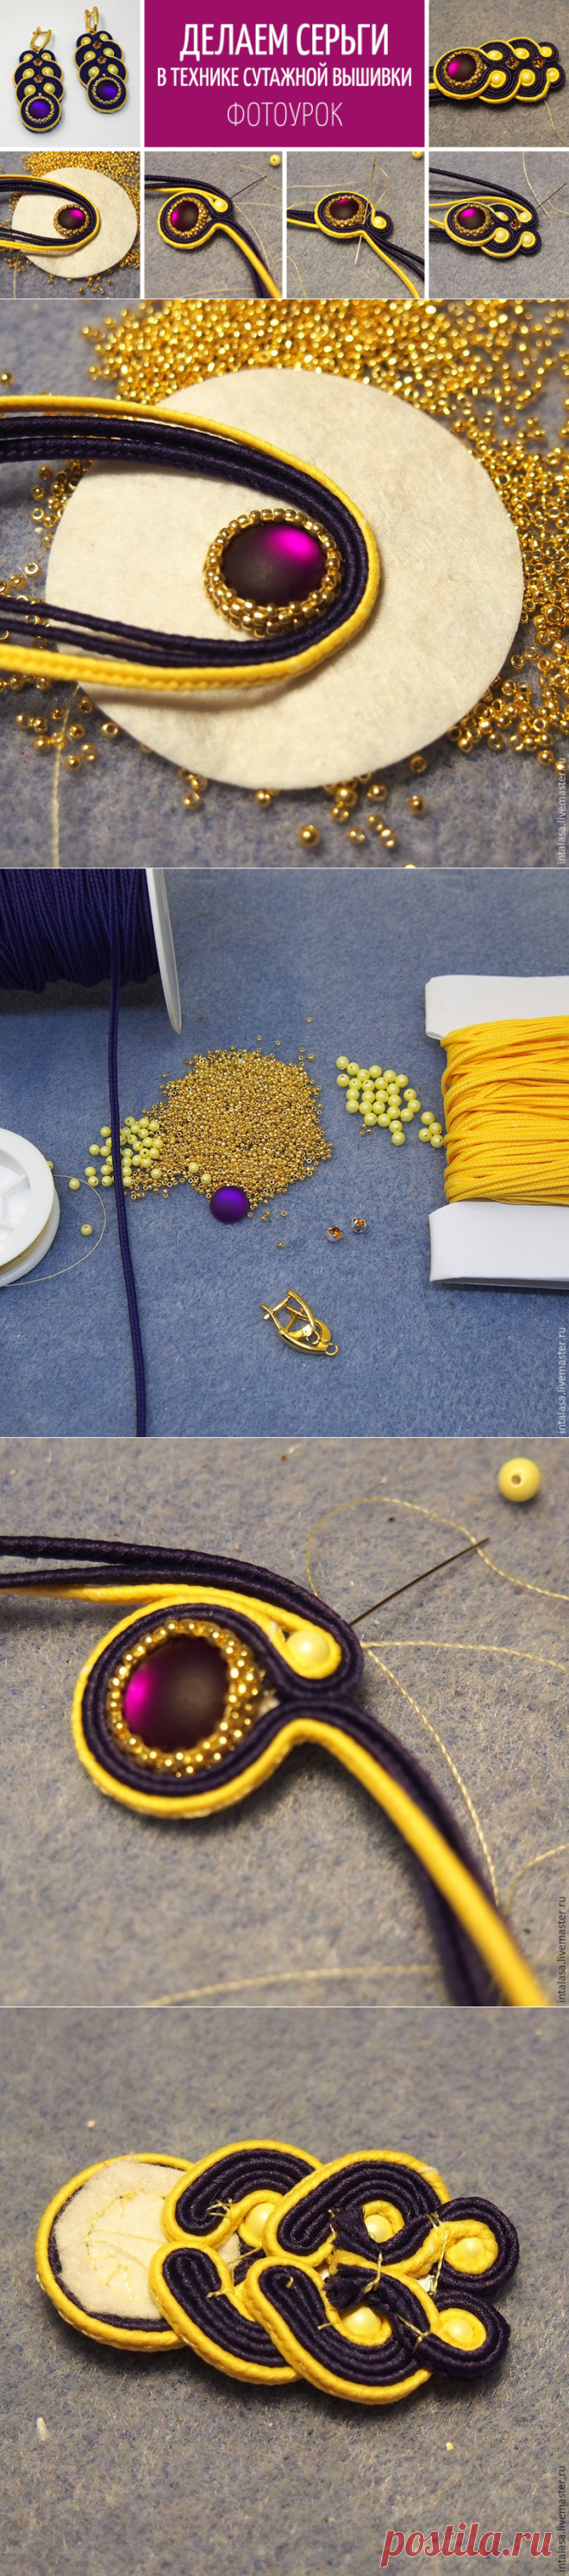 Делаем сережки в технике сутажной вышивки - Ярмарка Мастеров - ручная работа, handmade